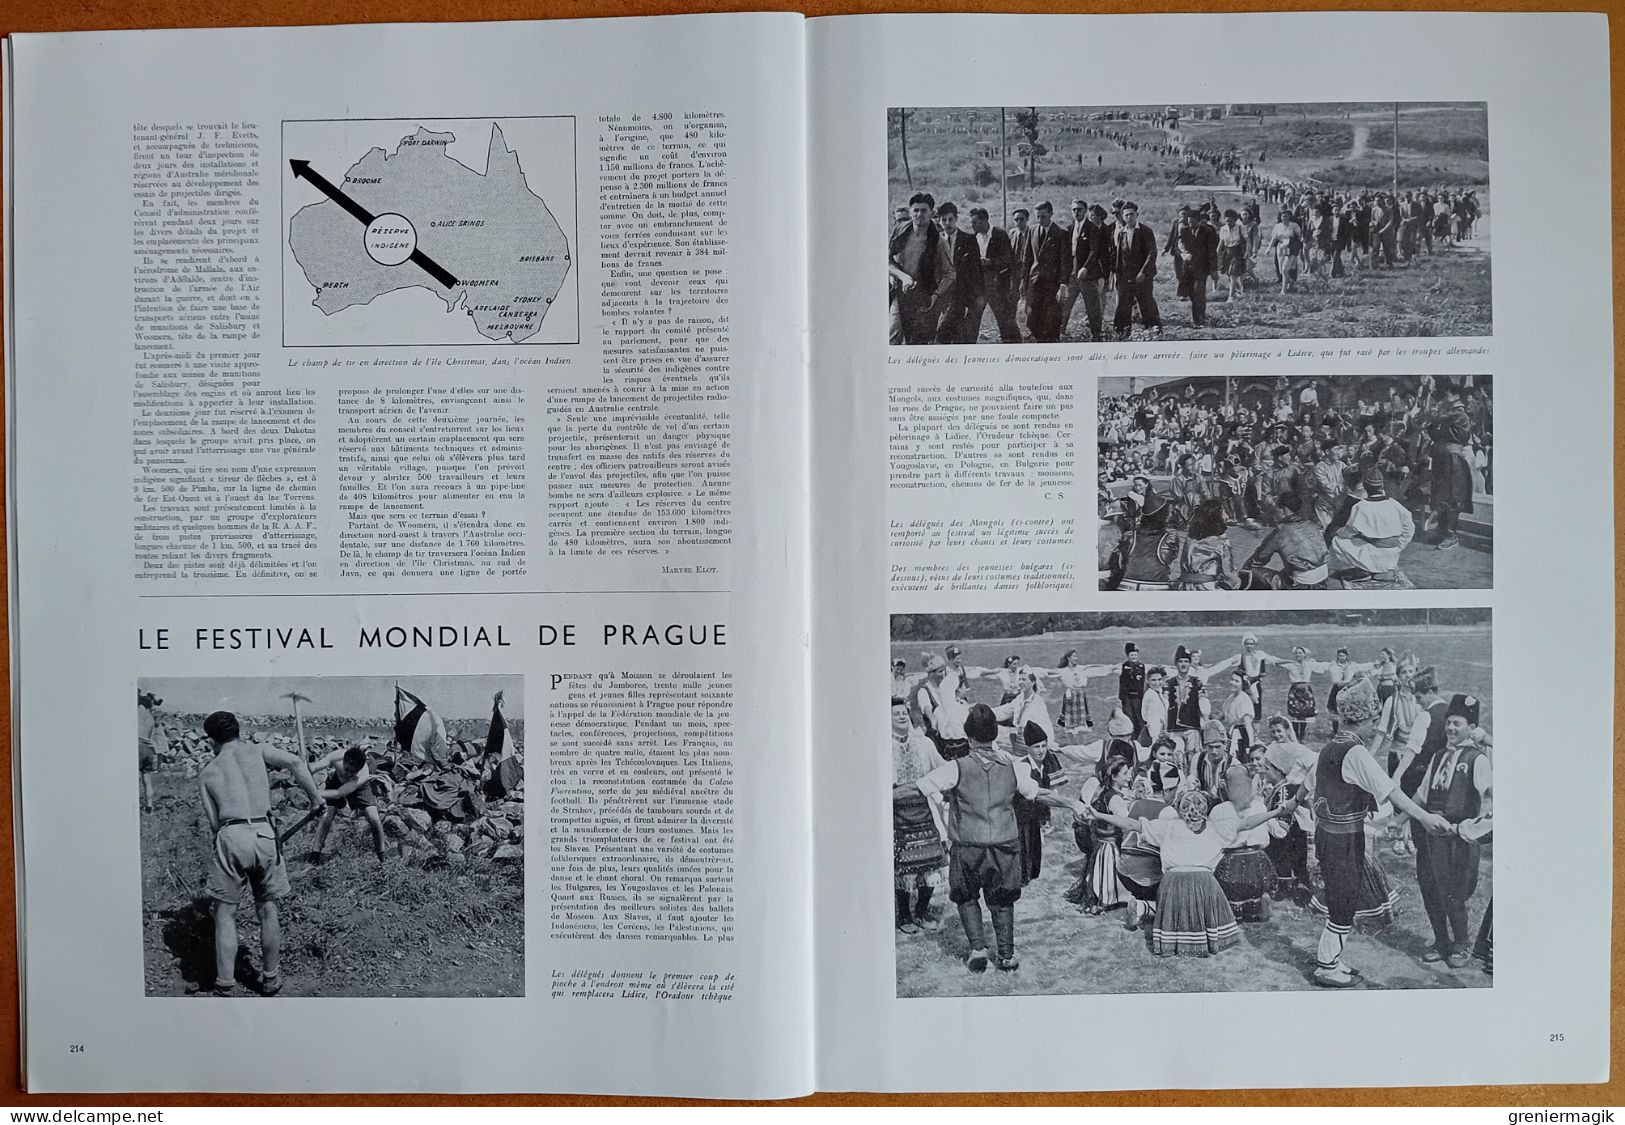 France Illustration N°100 30/08/1947 Dominions Inde Pakistan/Anniversaire Libération de Paris/Australie V-3/La moisson..